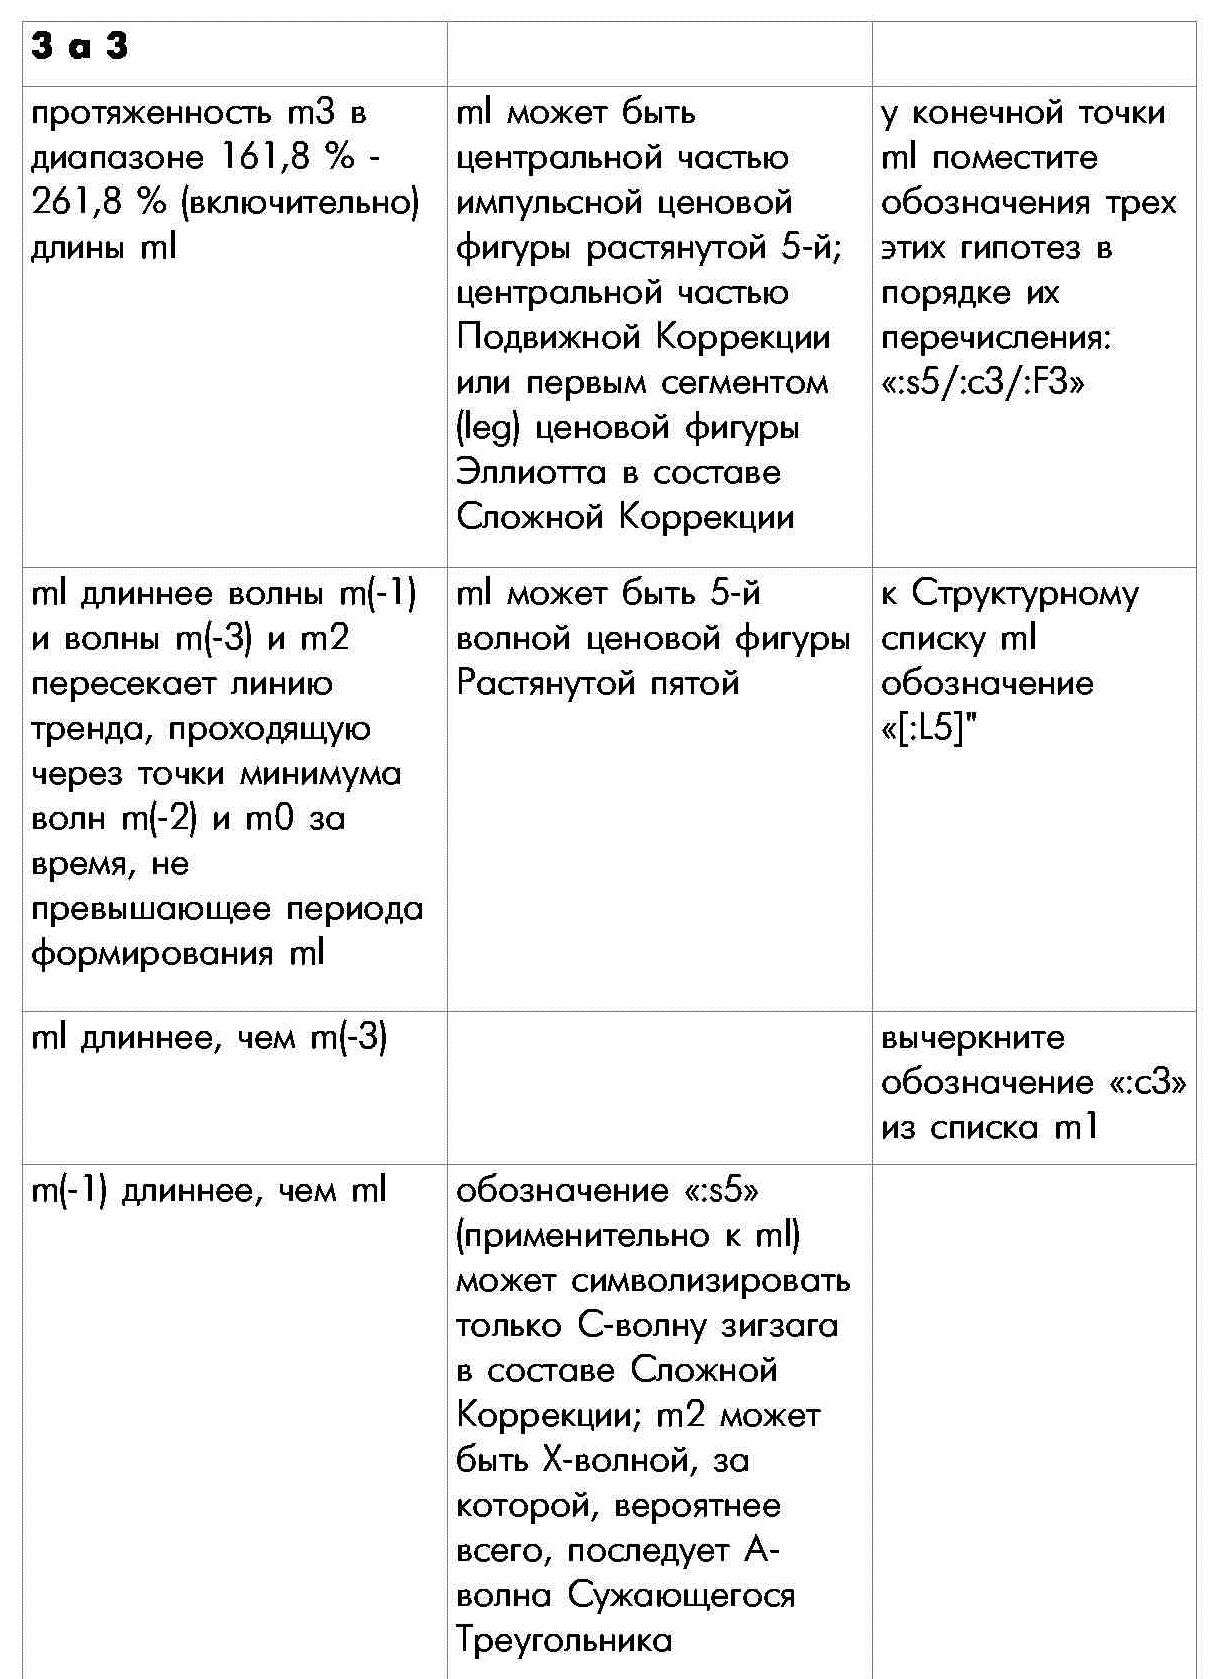 Правило П-3 определения внутренней структуры моноволны вторая часть таблицы